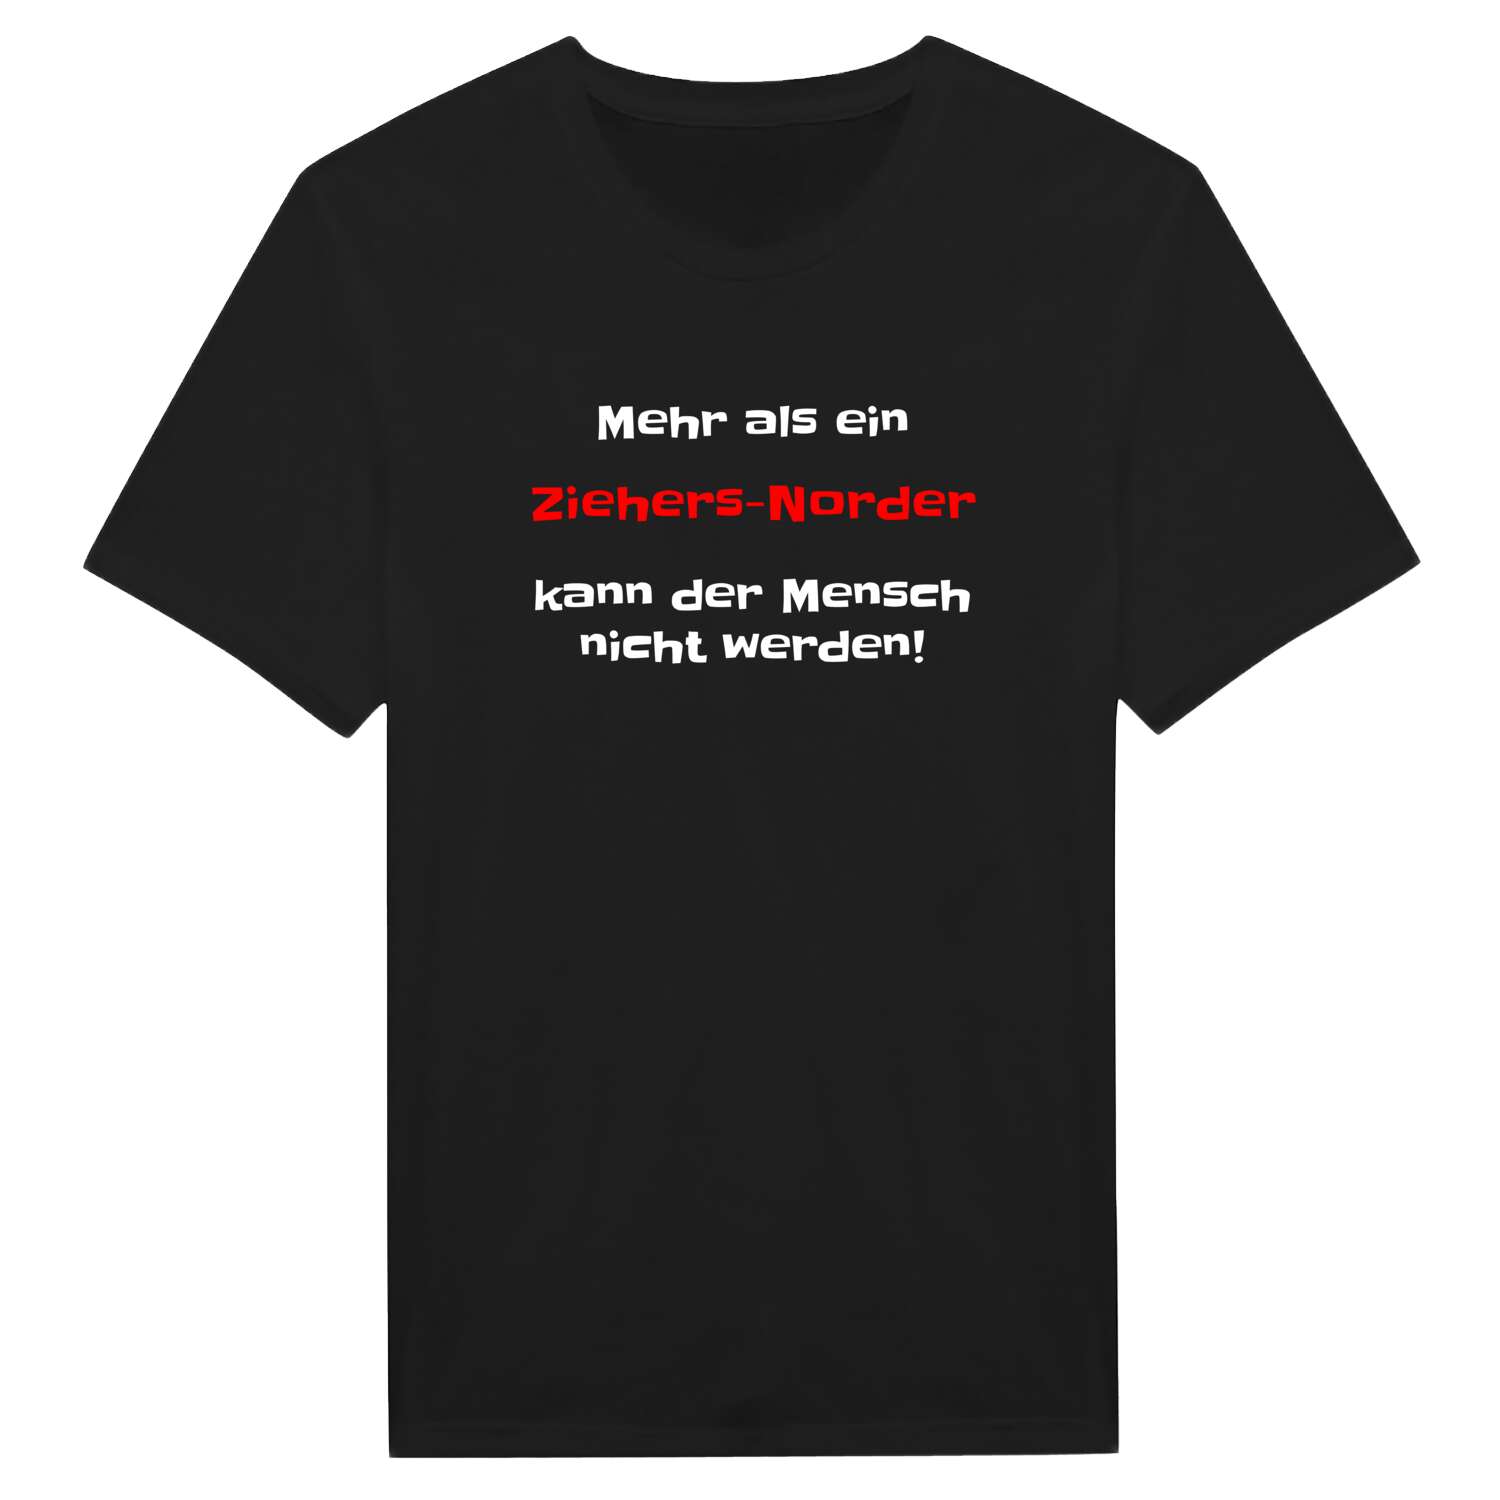 Ziehers-Nord T-Shirt »Mehr als ein«